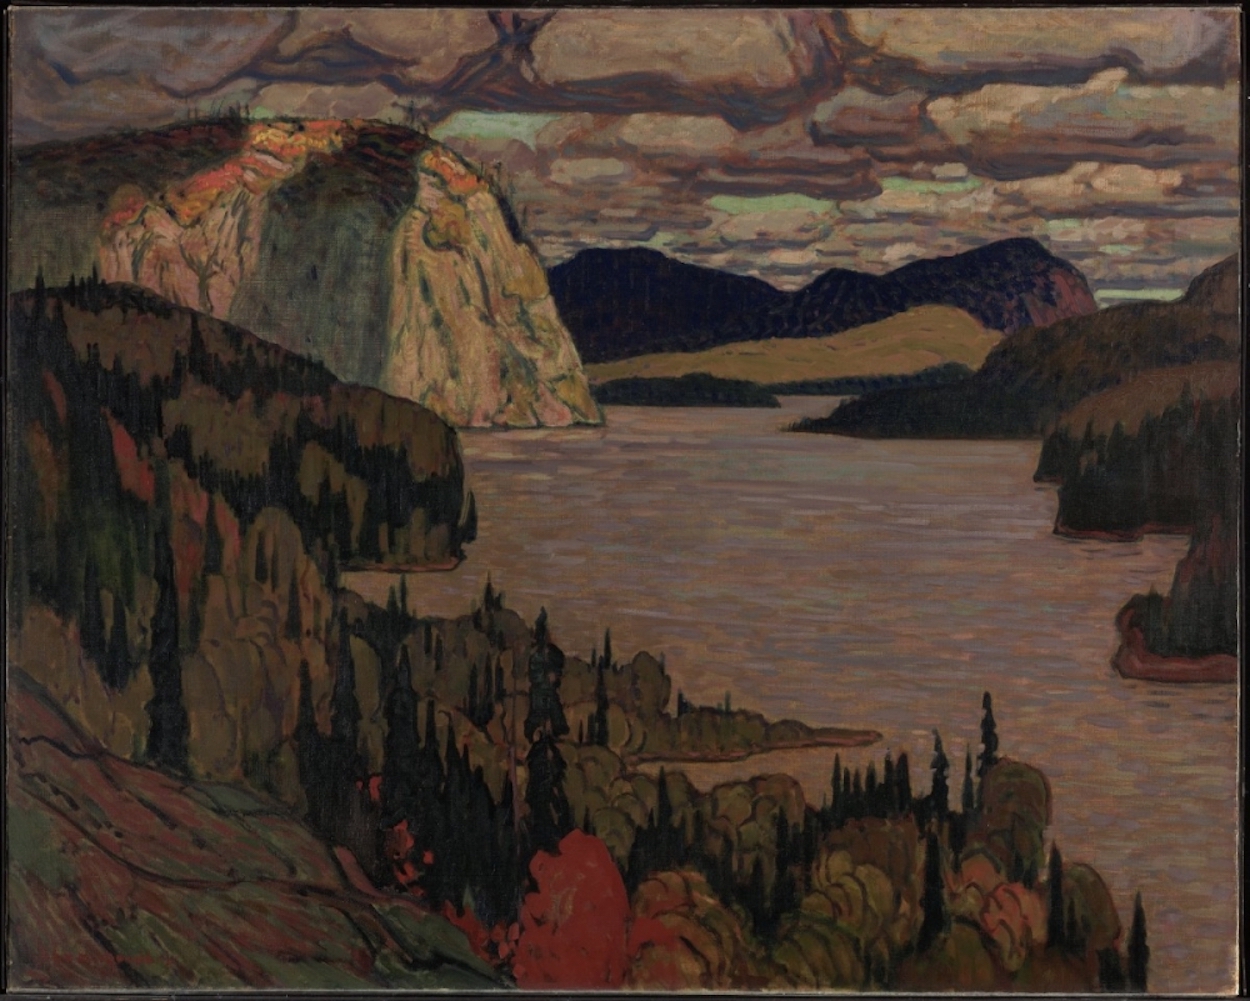 Das erhabene Land by J.E.H. MacDonald - 1921 - 122,5 x 153,5 cm National Gallery of Canada